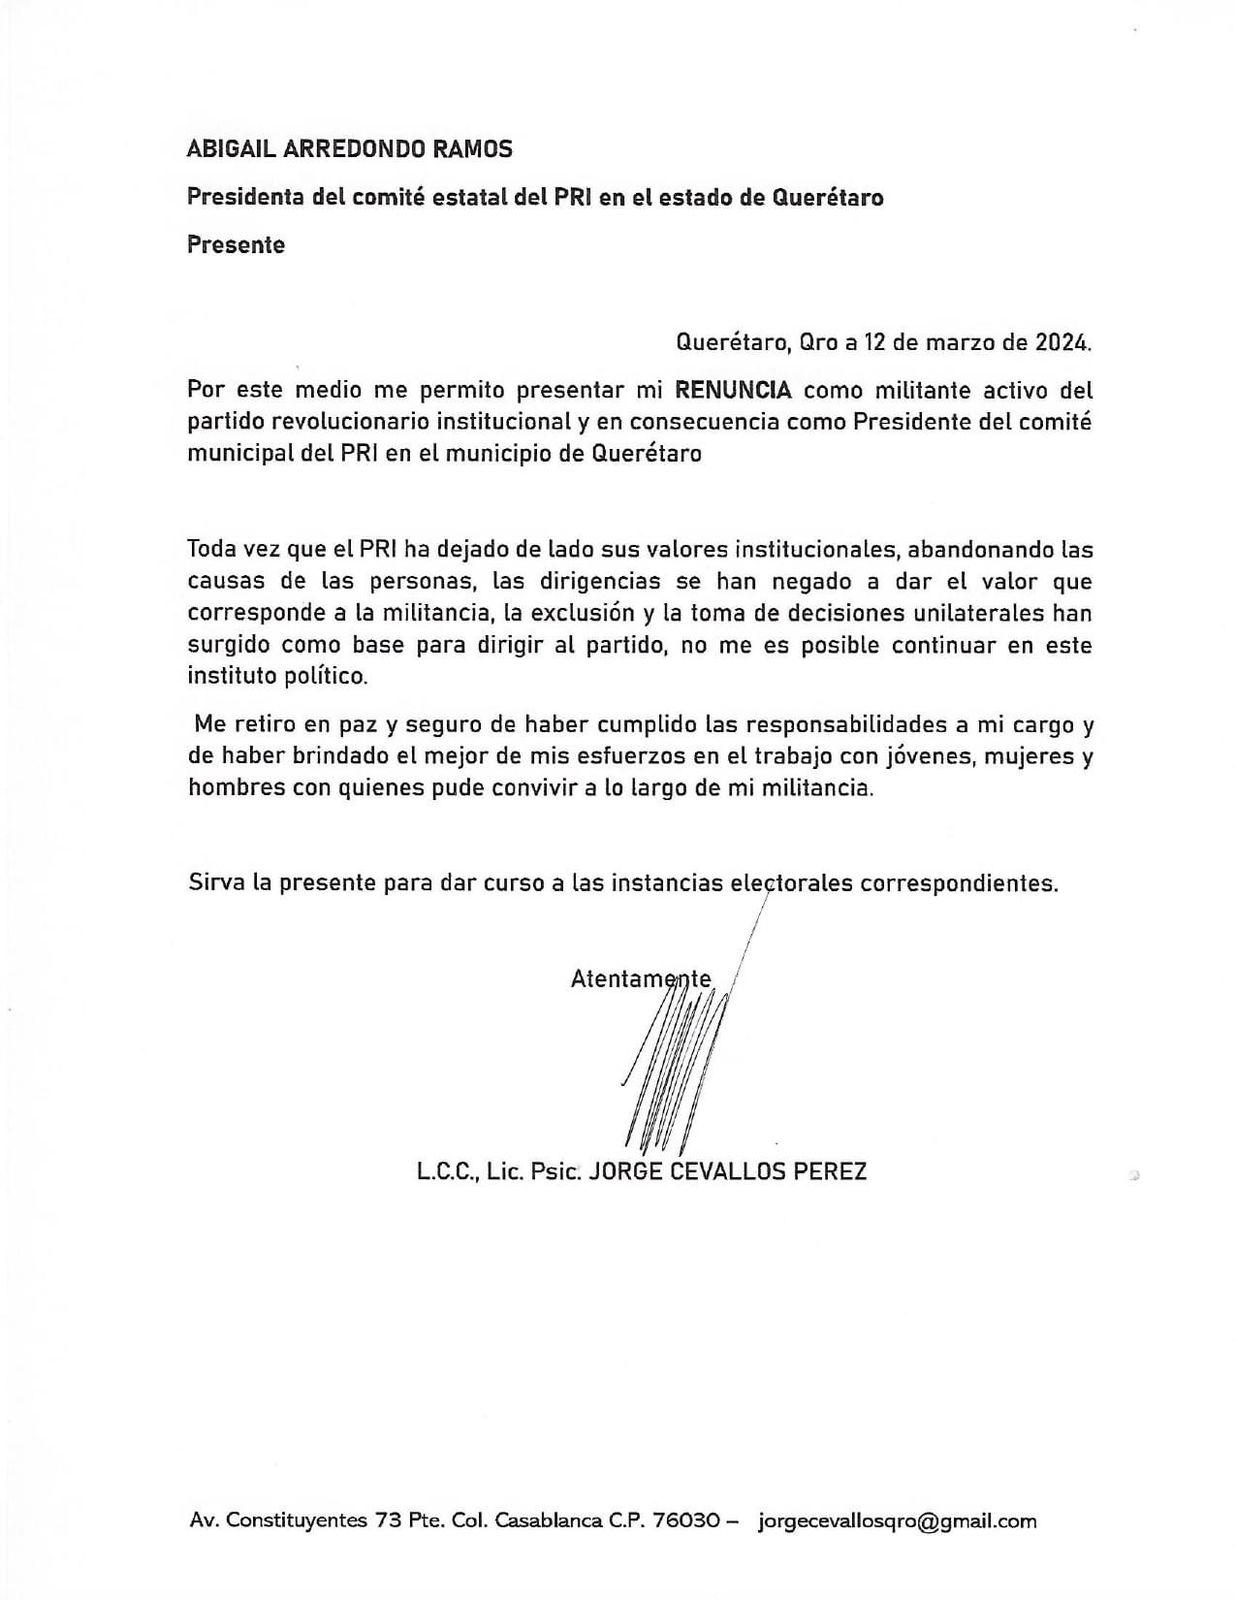 Carta de renuncia de Jorge Cevallos Pérez a la dirigencia municipal del PRI en Querétaro